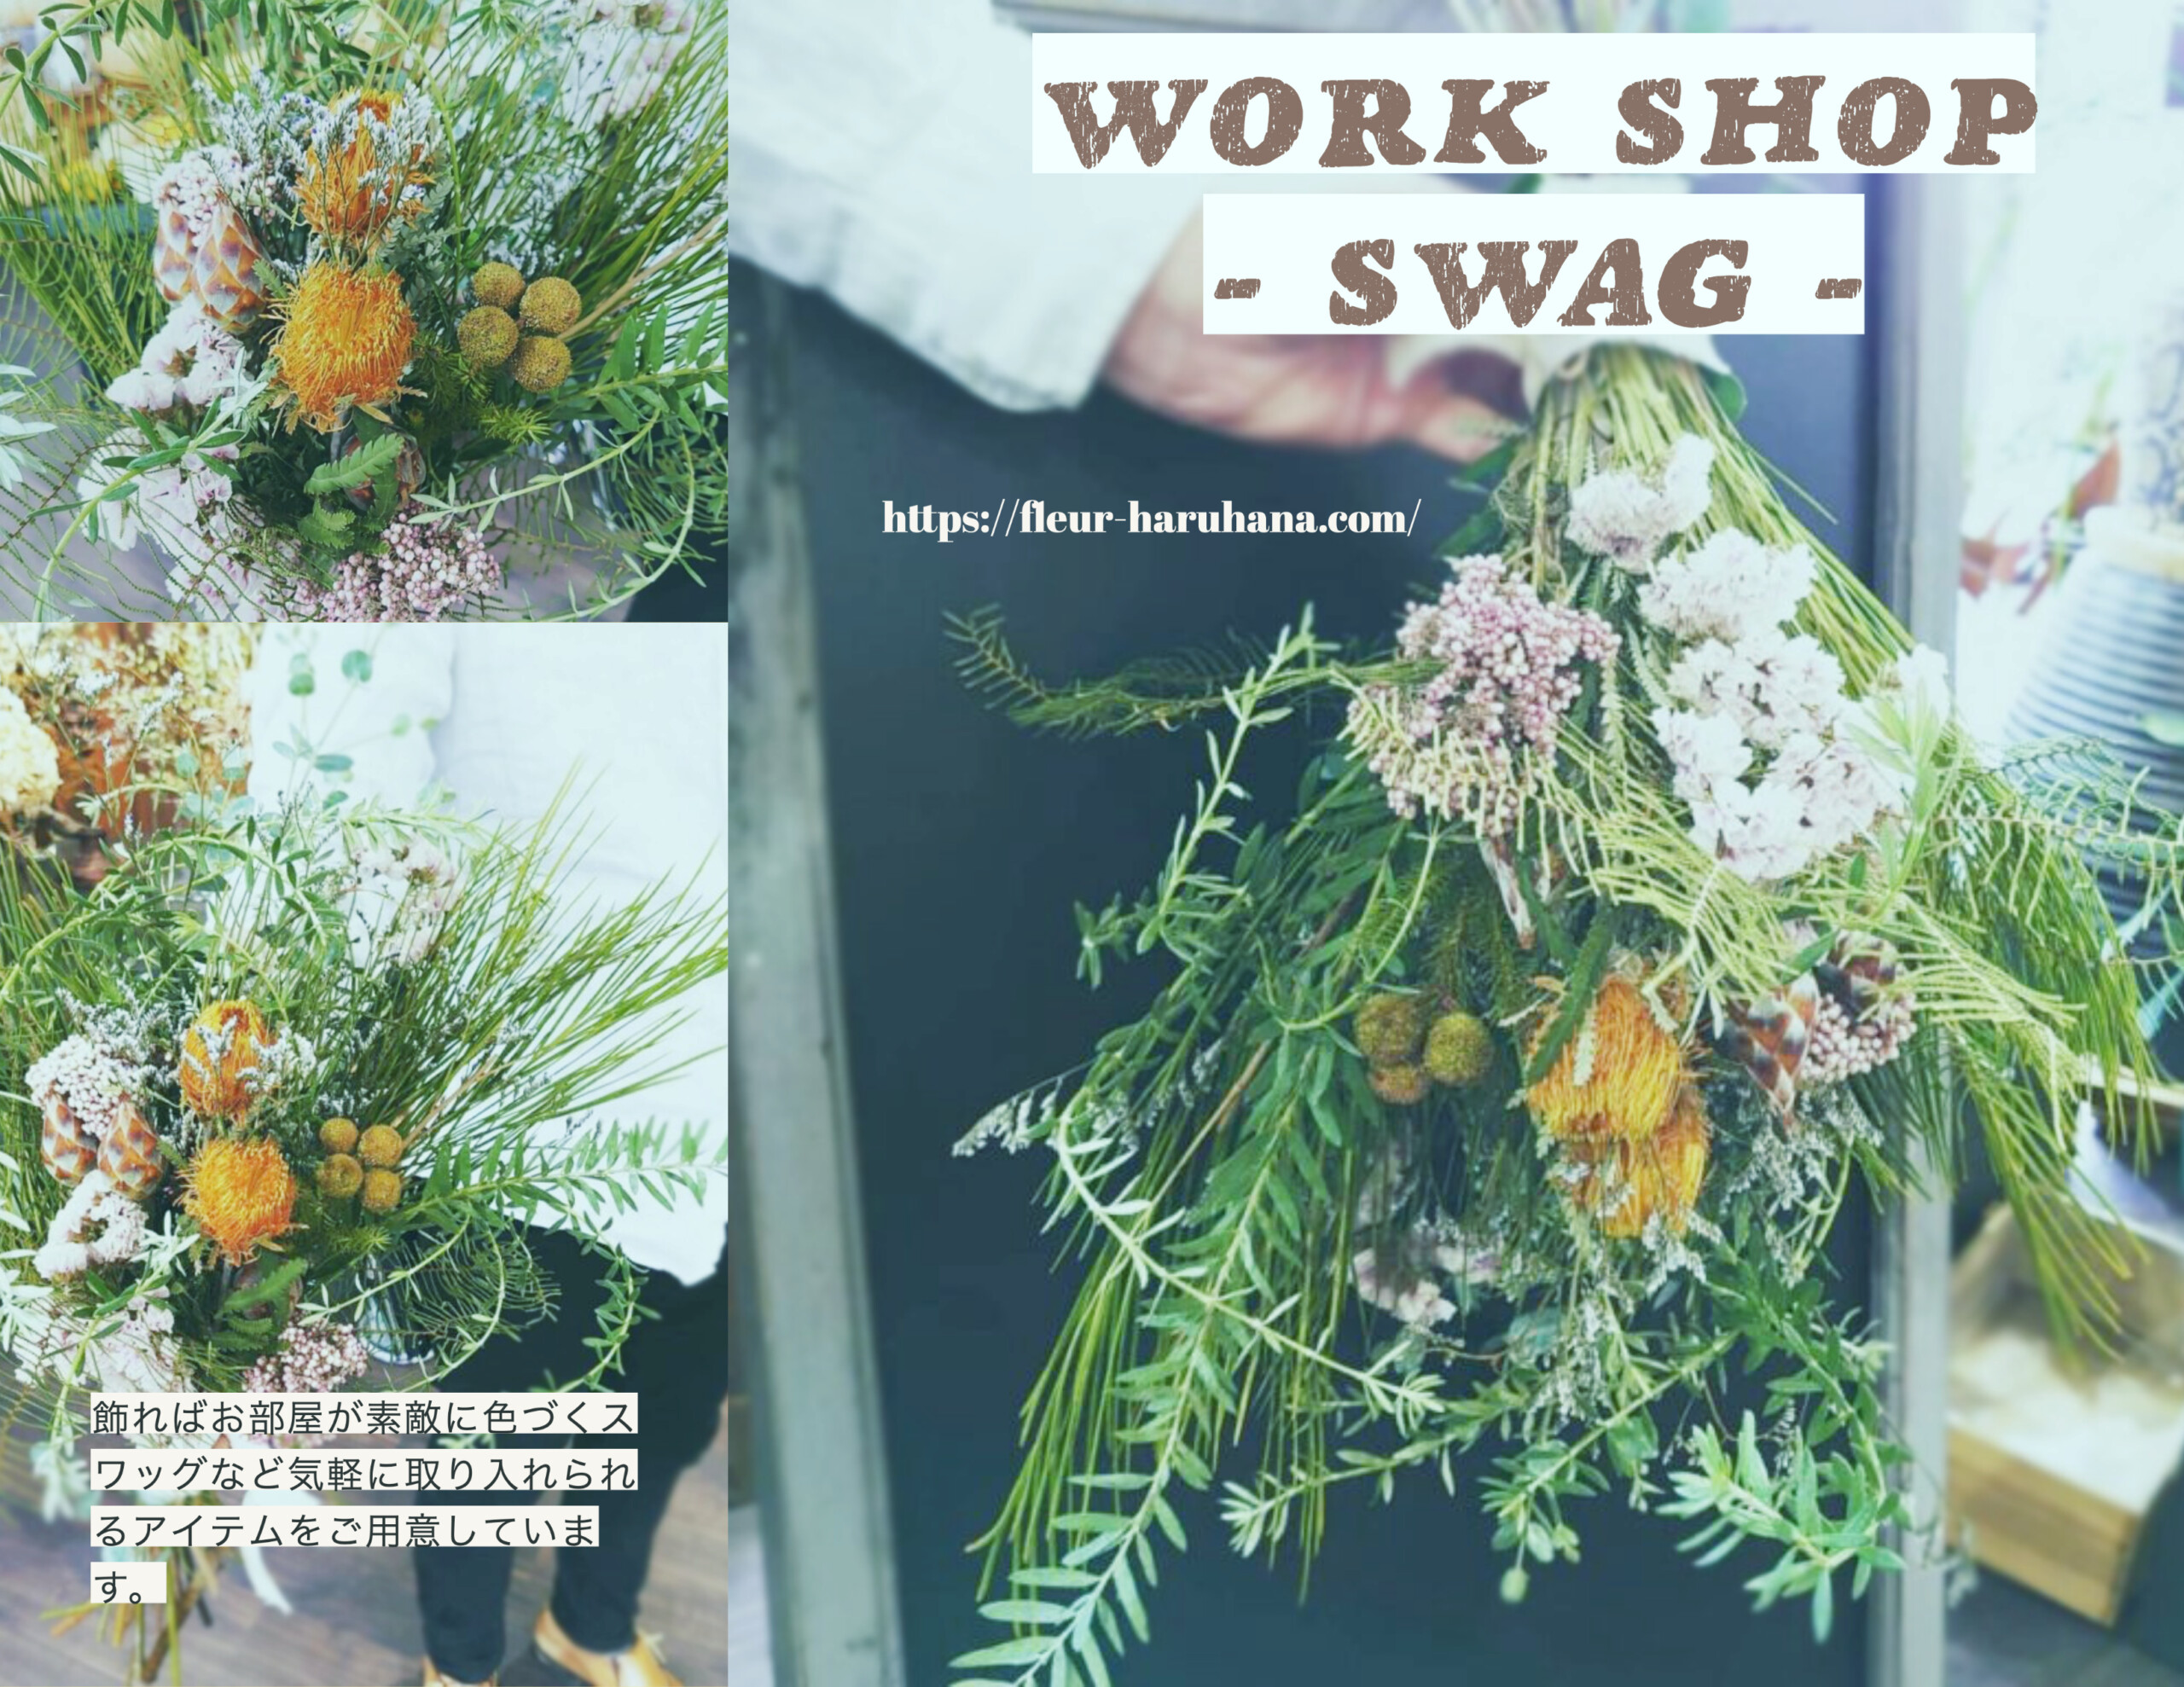 ワークショップ 生花からドライフラワーへの変化を楽しむ スワッグレッスン 福山市の地元情報メディアconnect コネクト